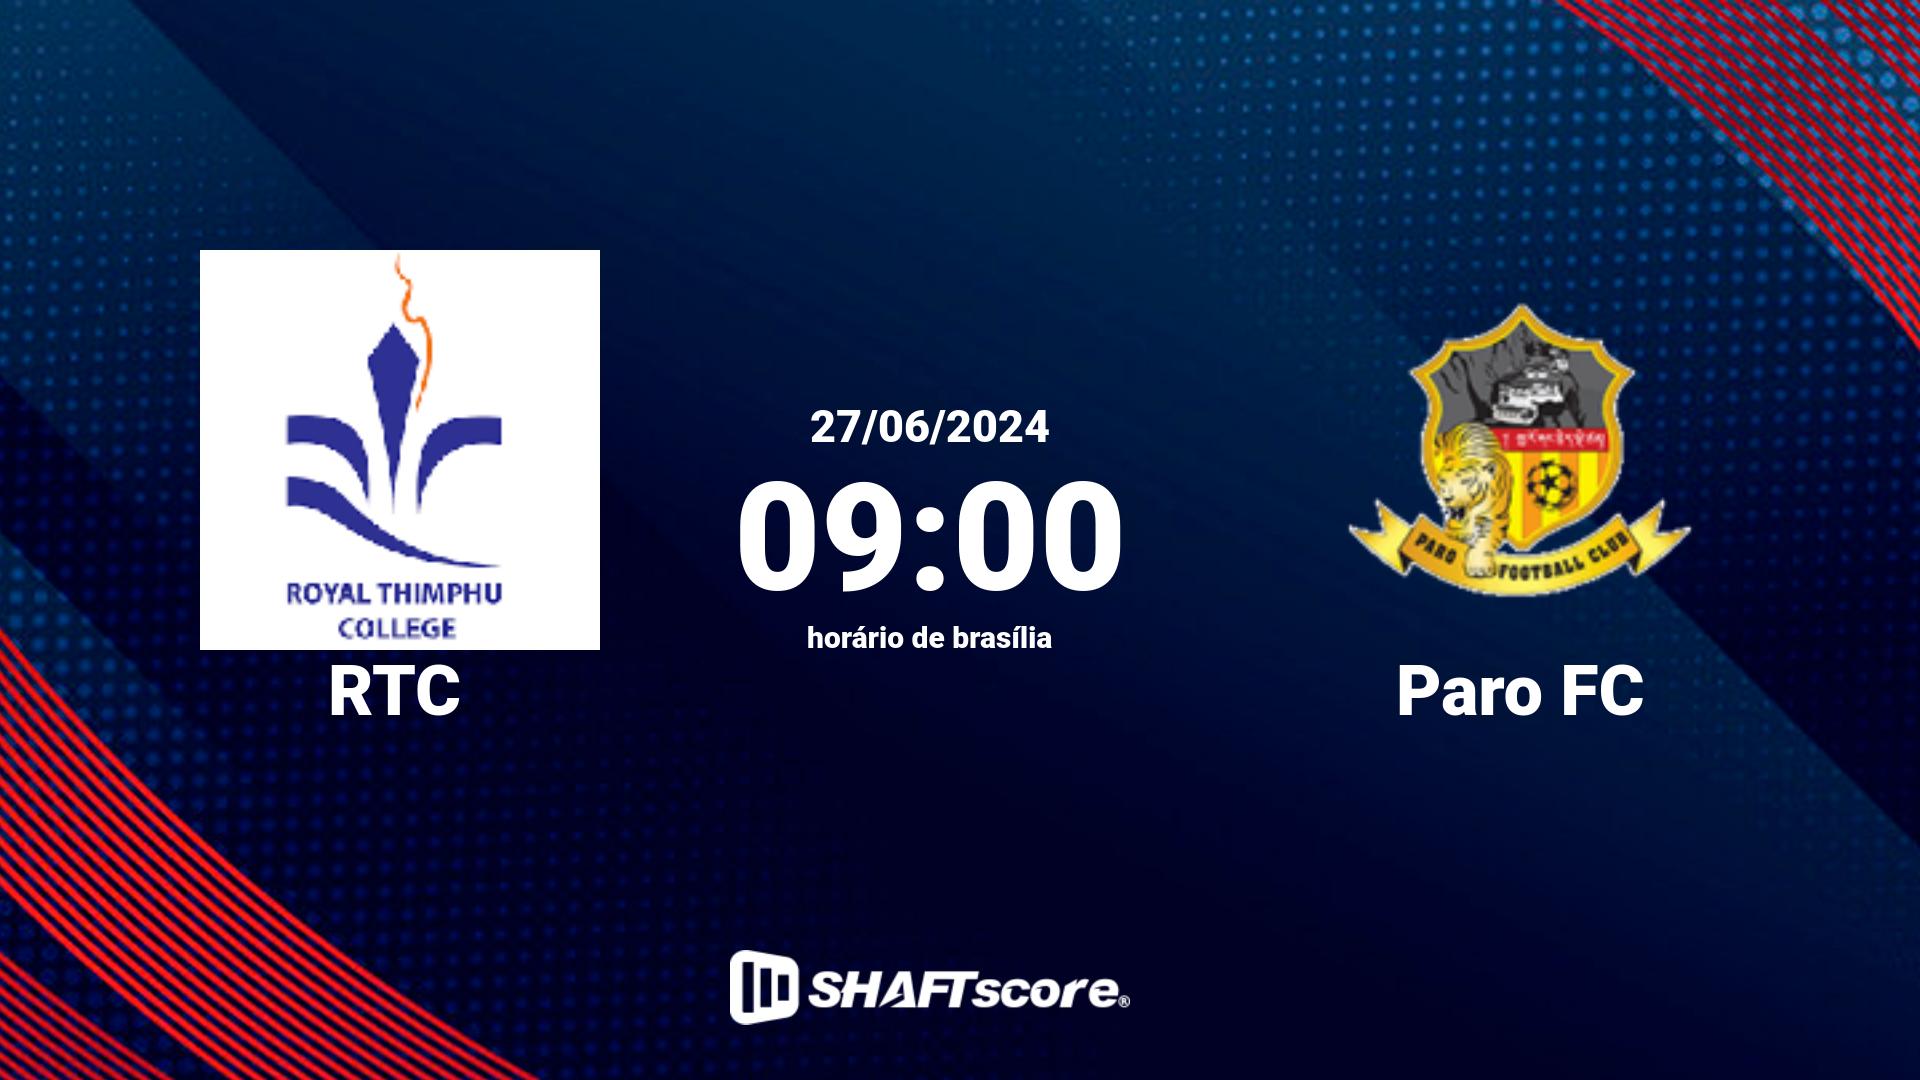 Estatísticas do jogo RTC vs Paro FC 27.06 09:00